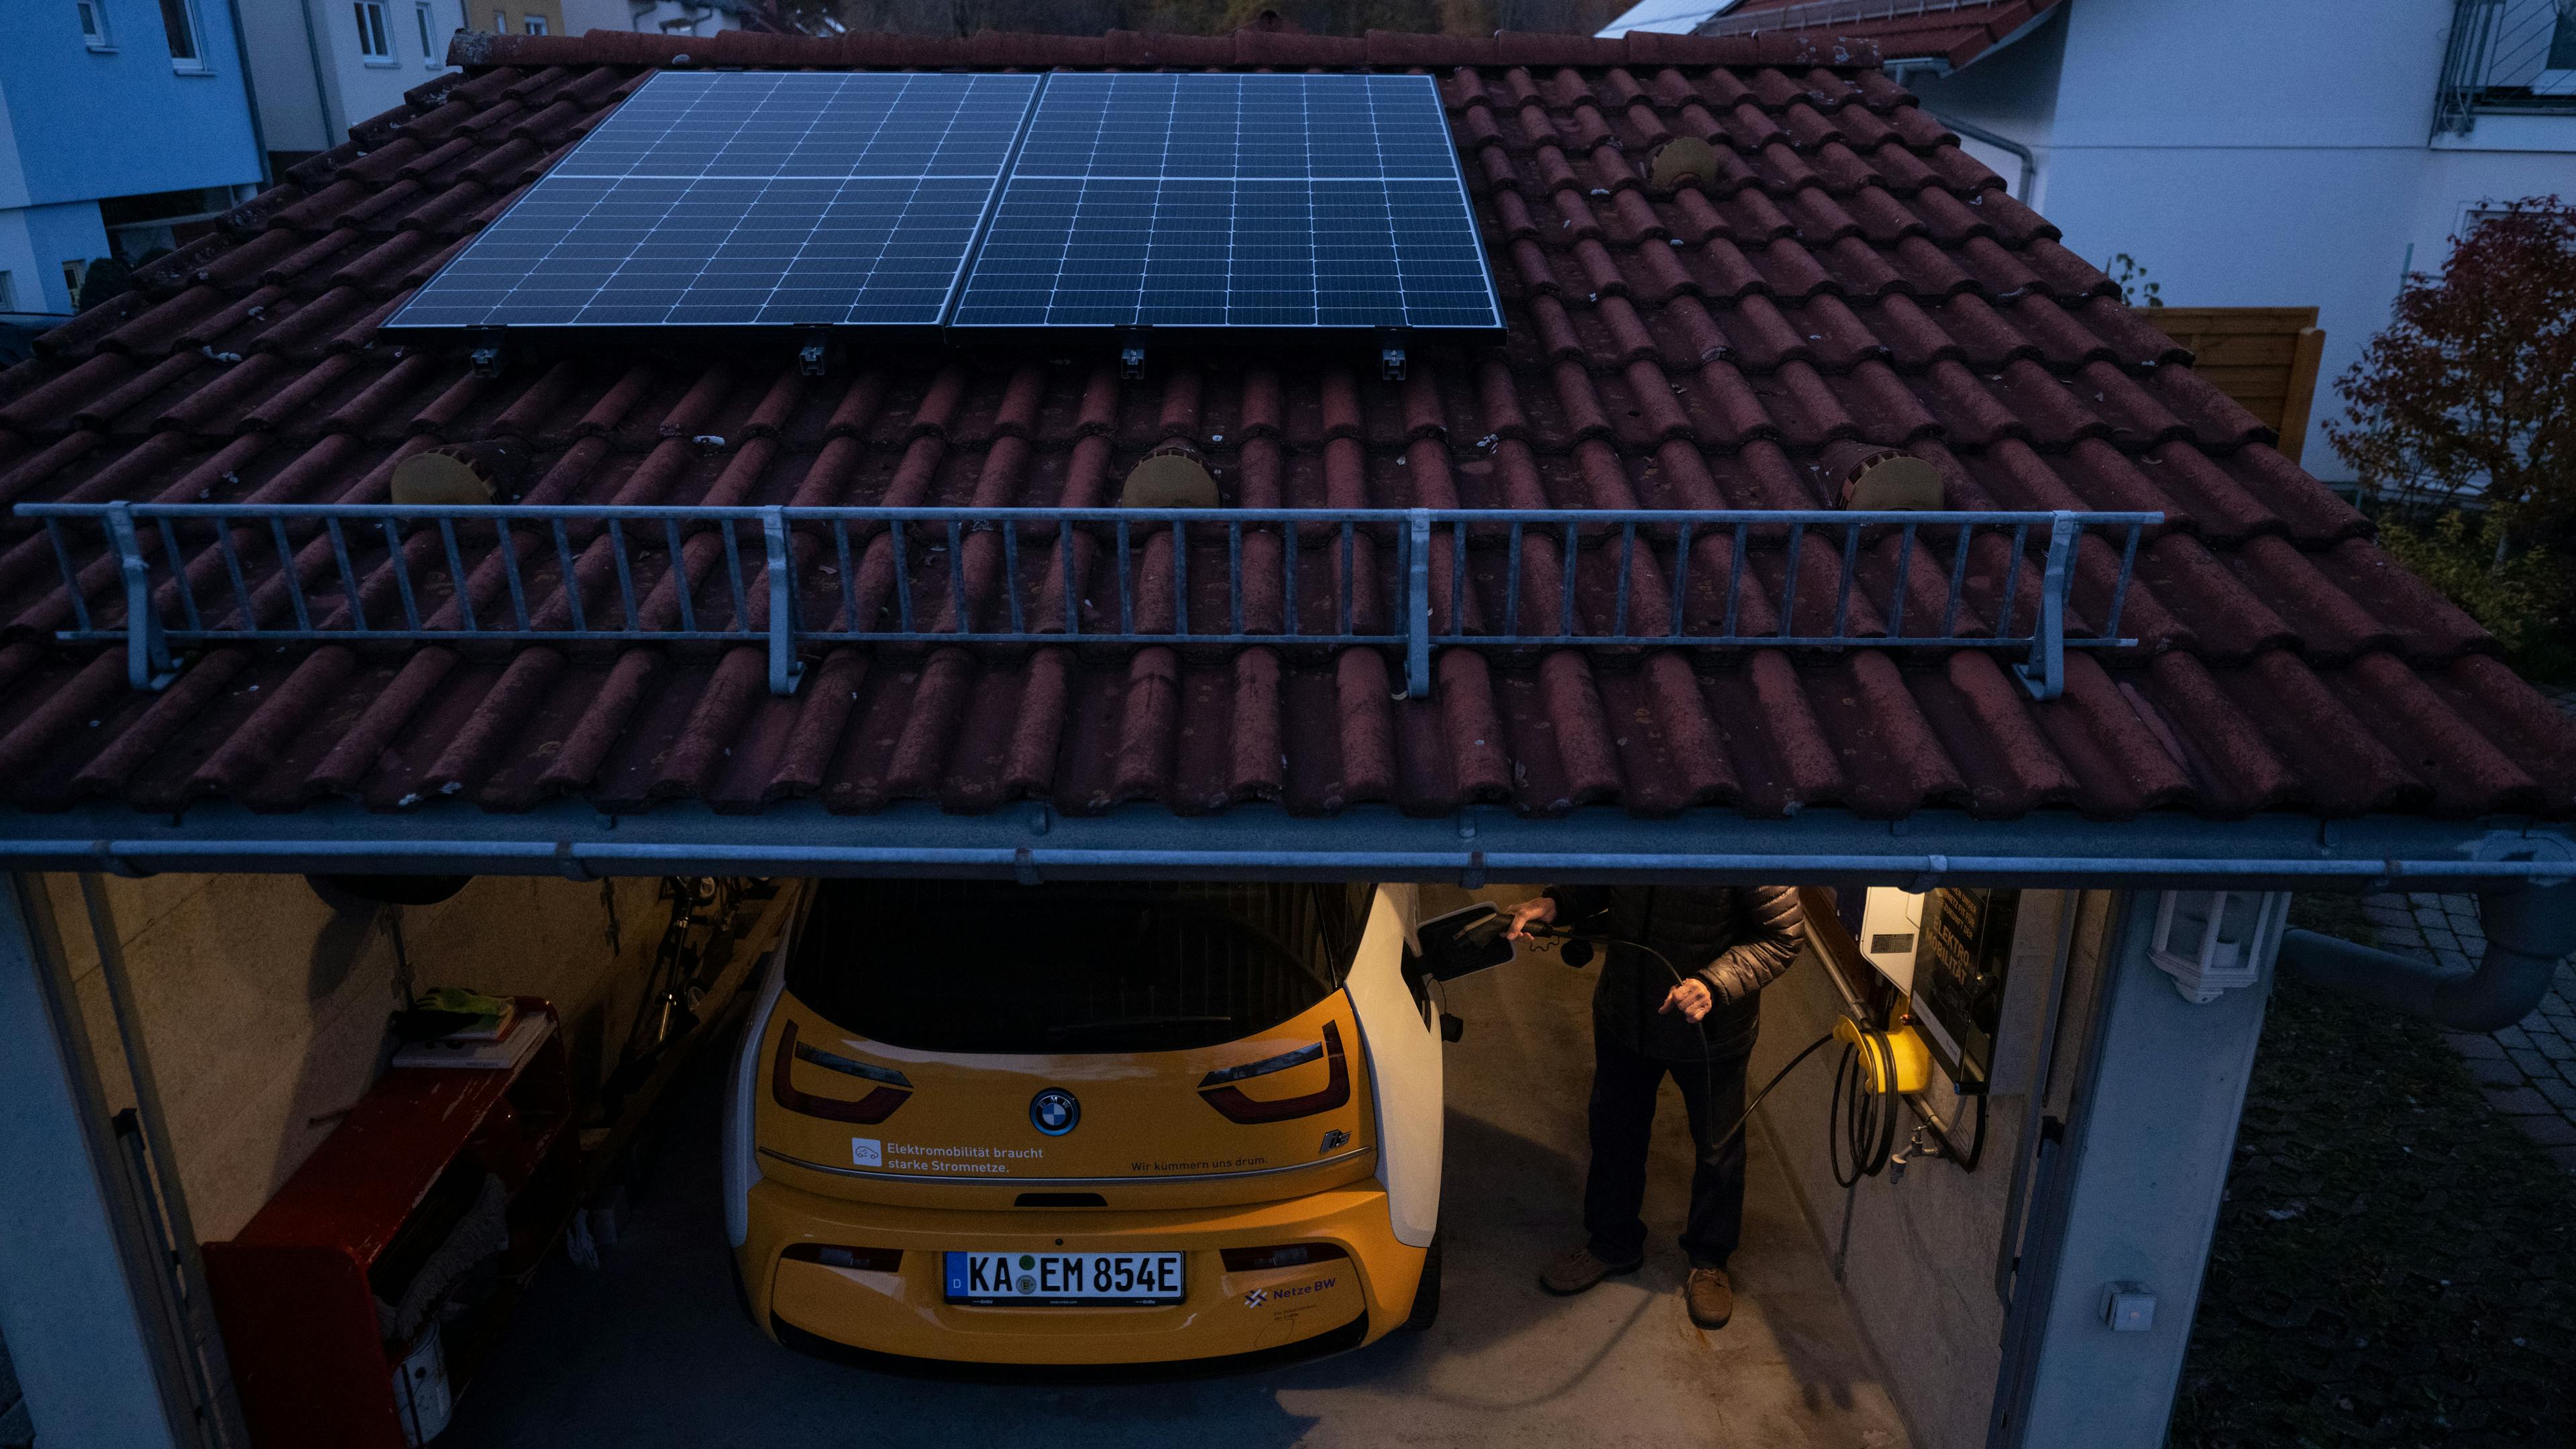 Eine Photovoltaikanlage auf einen Carport.